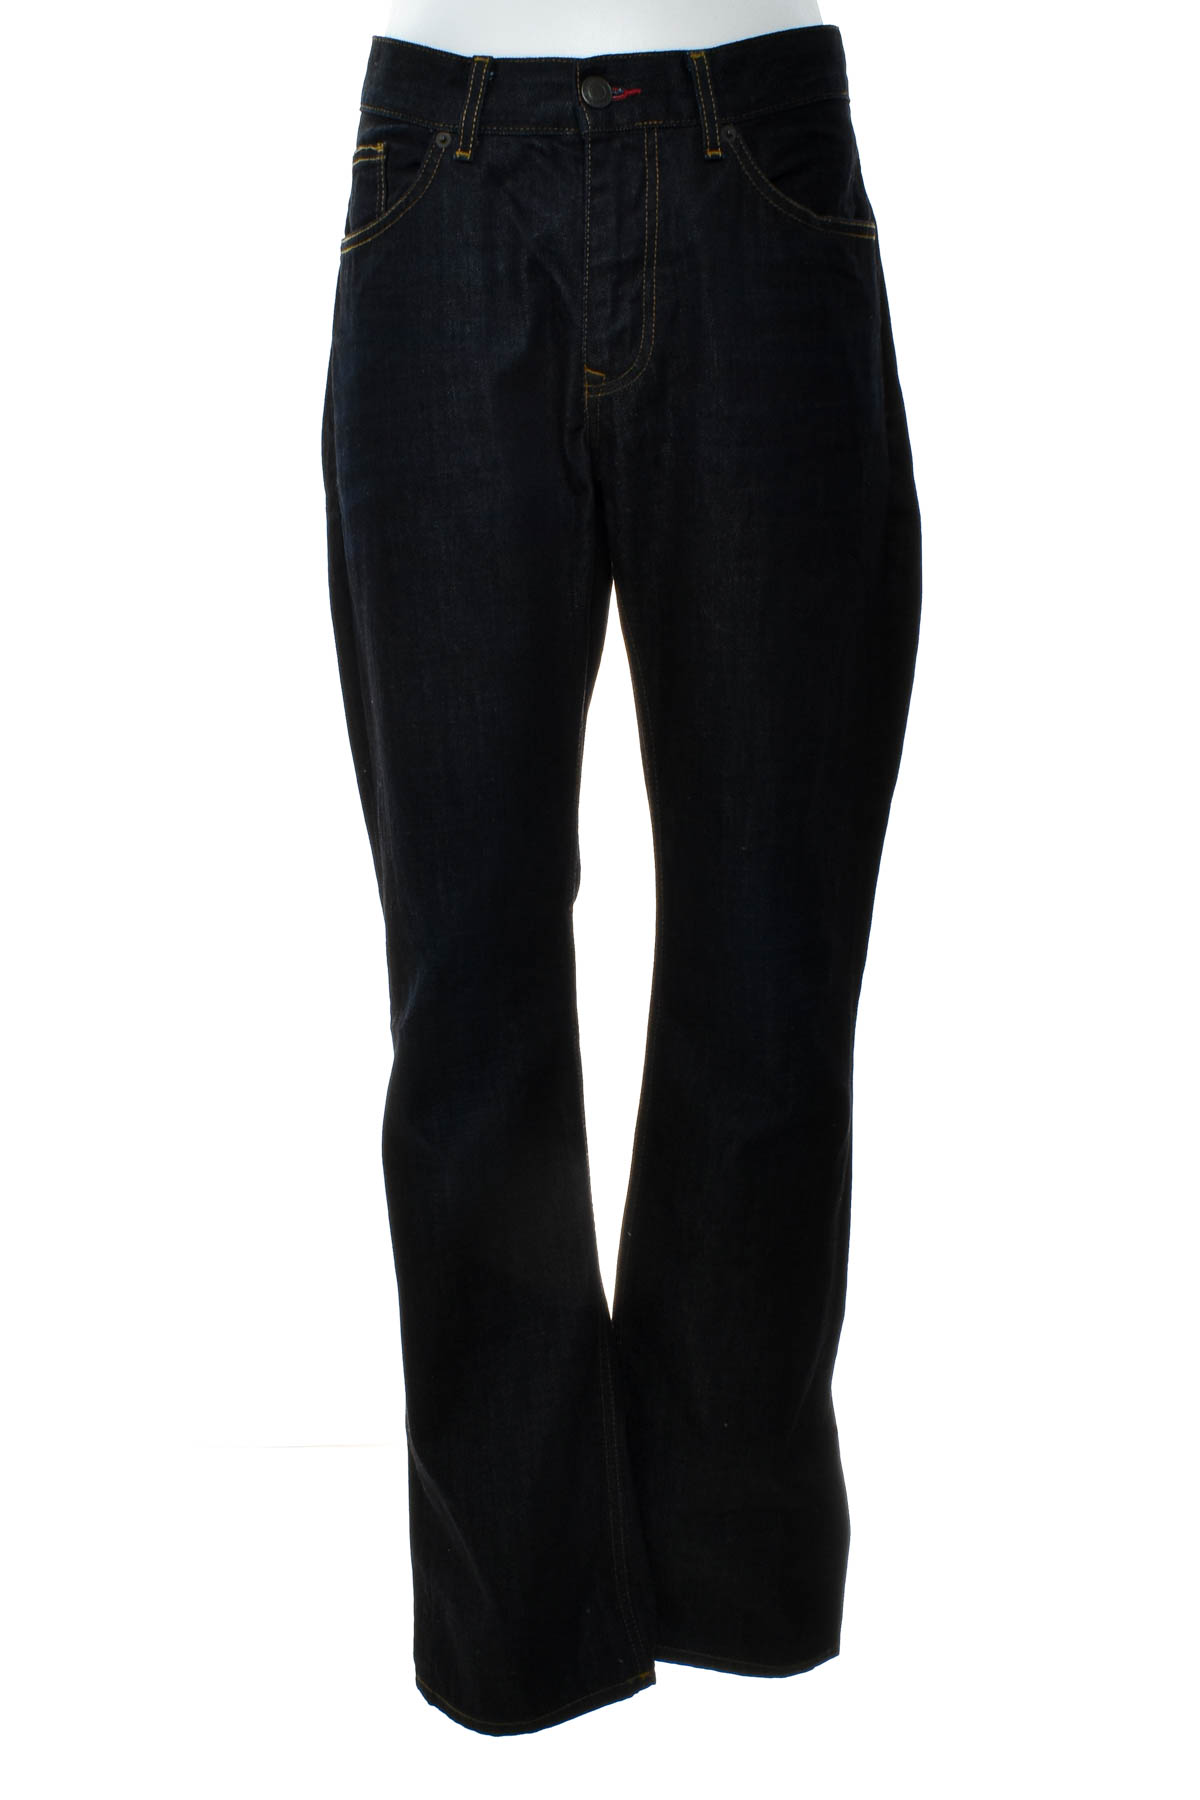 Jeans pentru bărbăți - TOMMY HILFIGER - 1